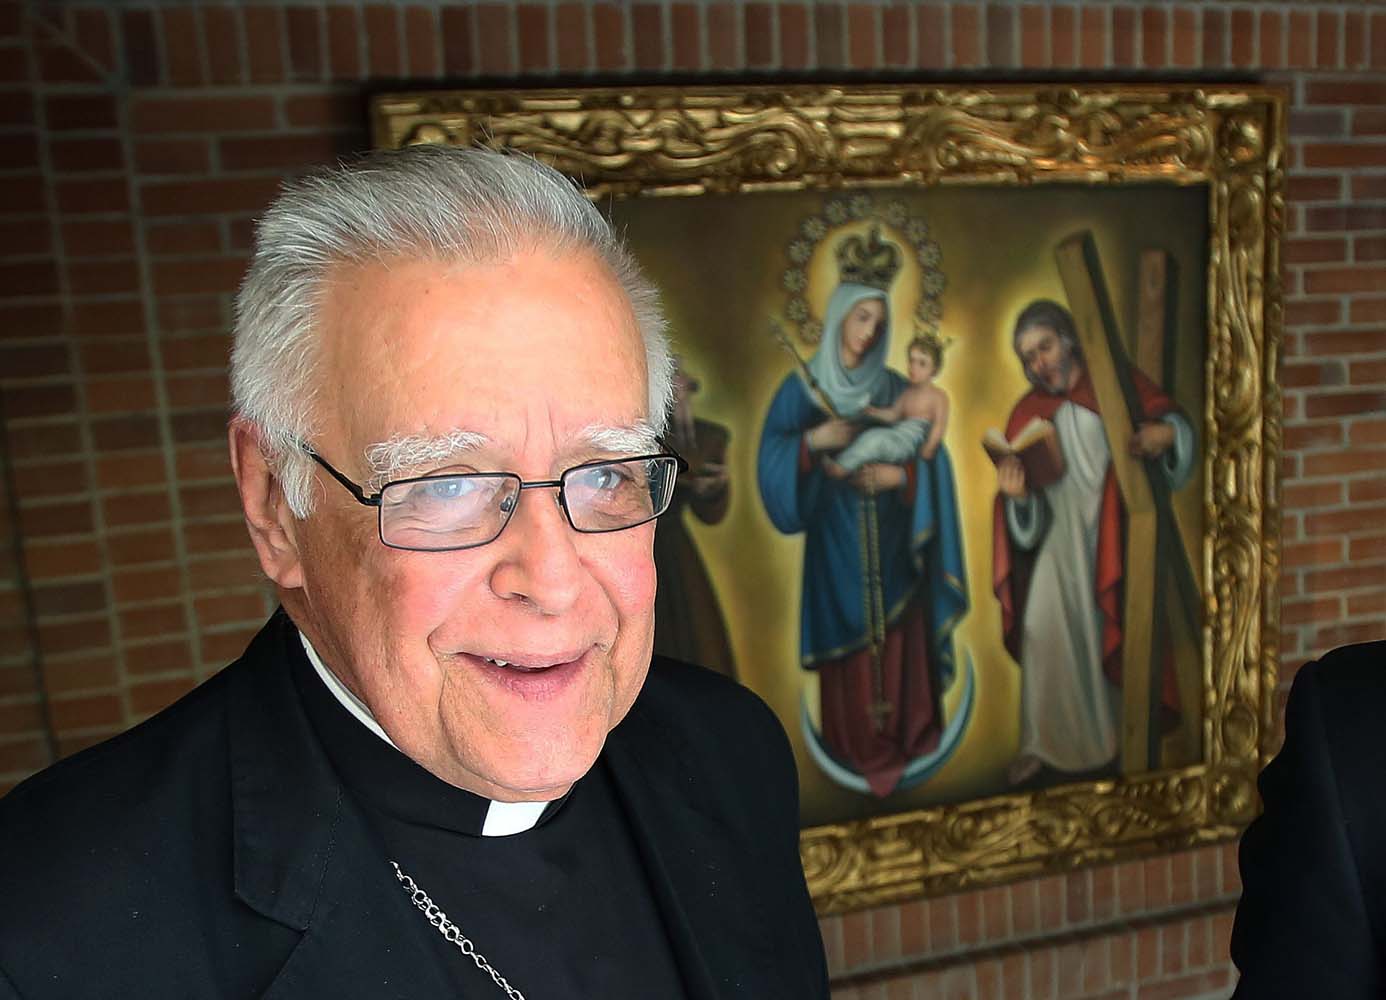 Arzobispo emérito de Coro, Roberto Lückert fue diagnosticado con neumonía tras el Covid-19